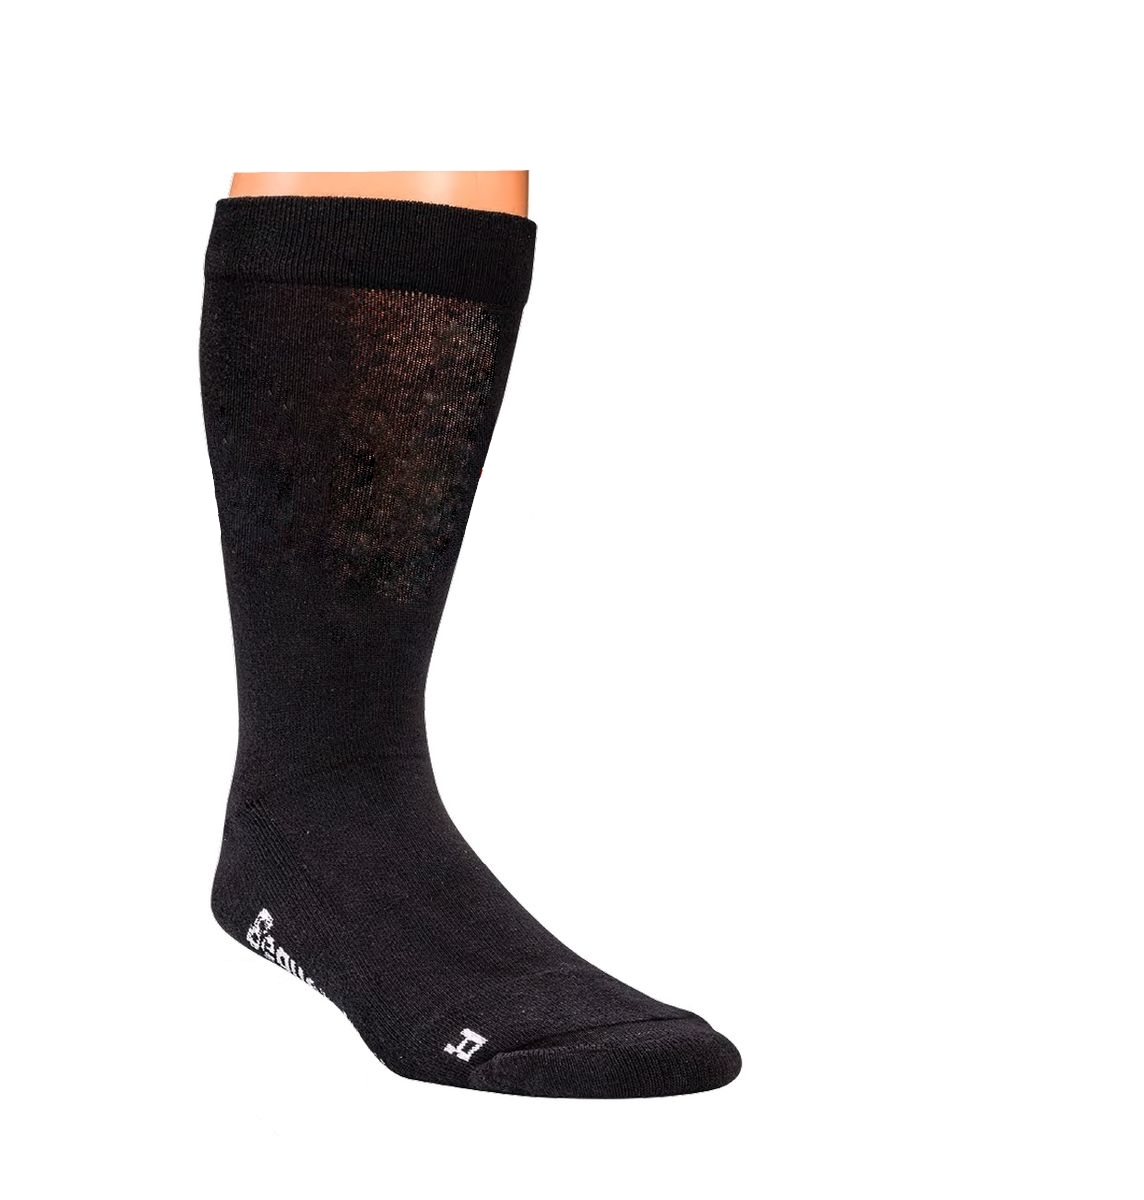 WOWERAT-Gesundheits-Arbeits-Berufs-Socken, mit Polstersohle, extra Breit, Pkg.  2 Paar, schwarz